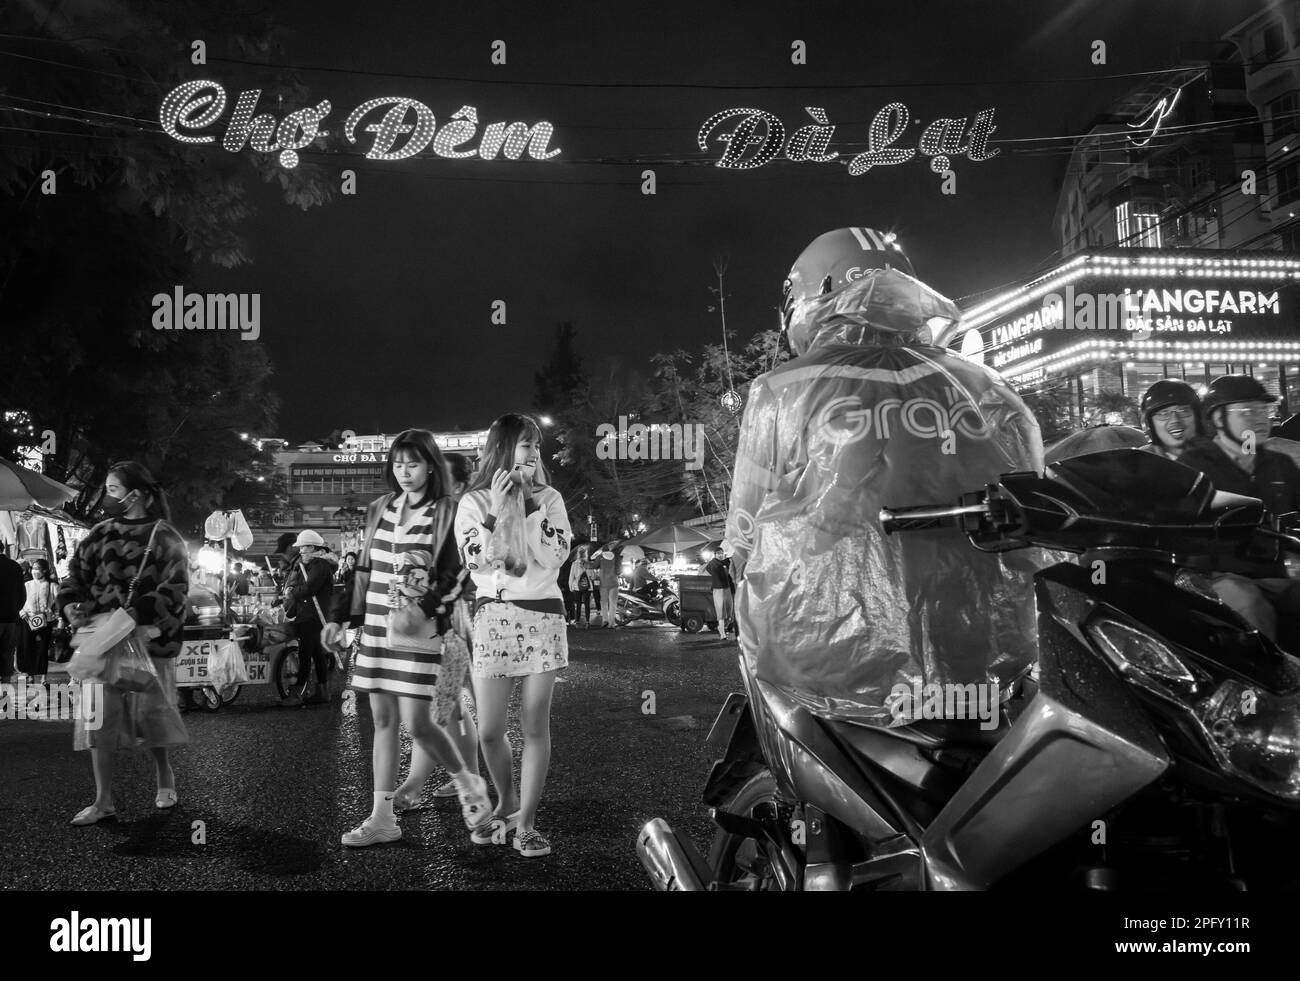 Zwei junge vietnamesische Mädchen gehen in Richtung eines Taxifahrers mit dem Motorrad, inmitten des geschäftigen Nachtmarkts in Dalat, Vietnam. Stockfoto